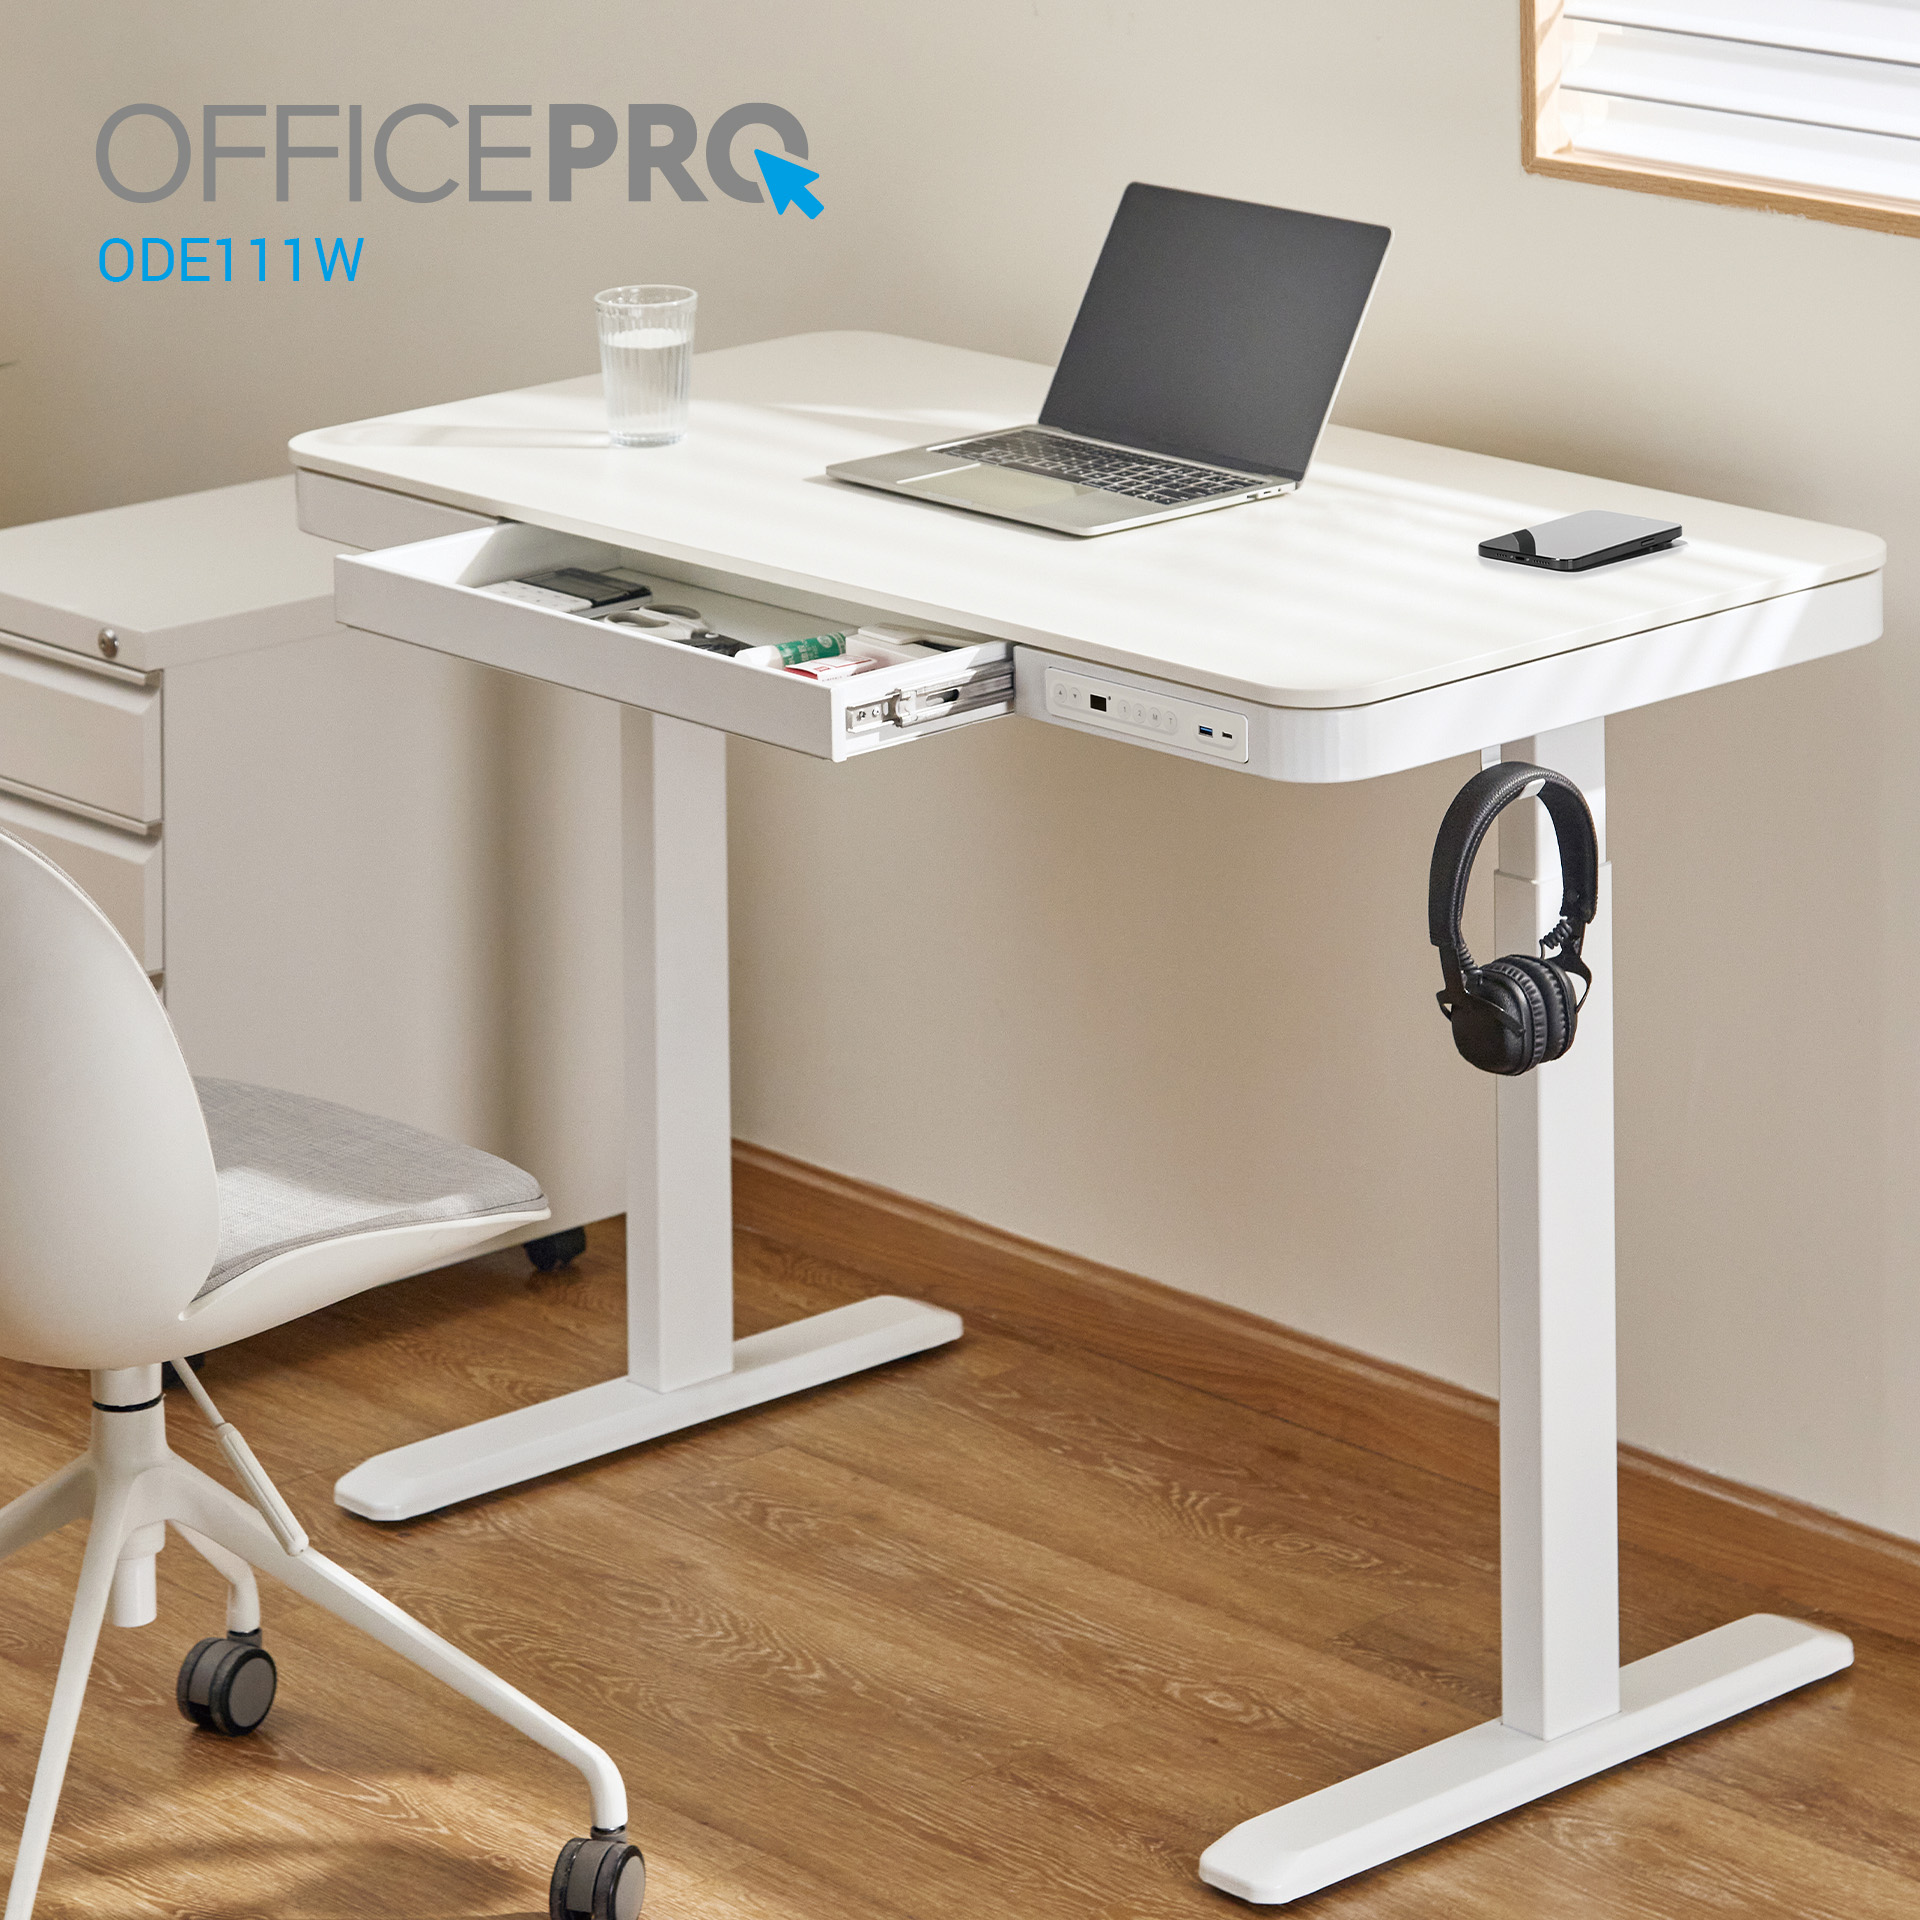 Комп'ютерний стіл OfficePro з електрорегулюванням висоти білий (ODE111WW) - фото 16